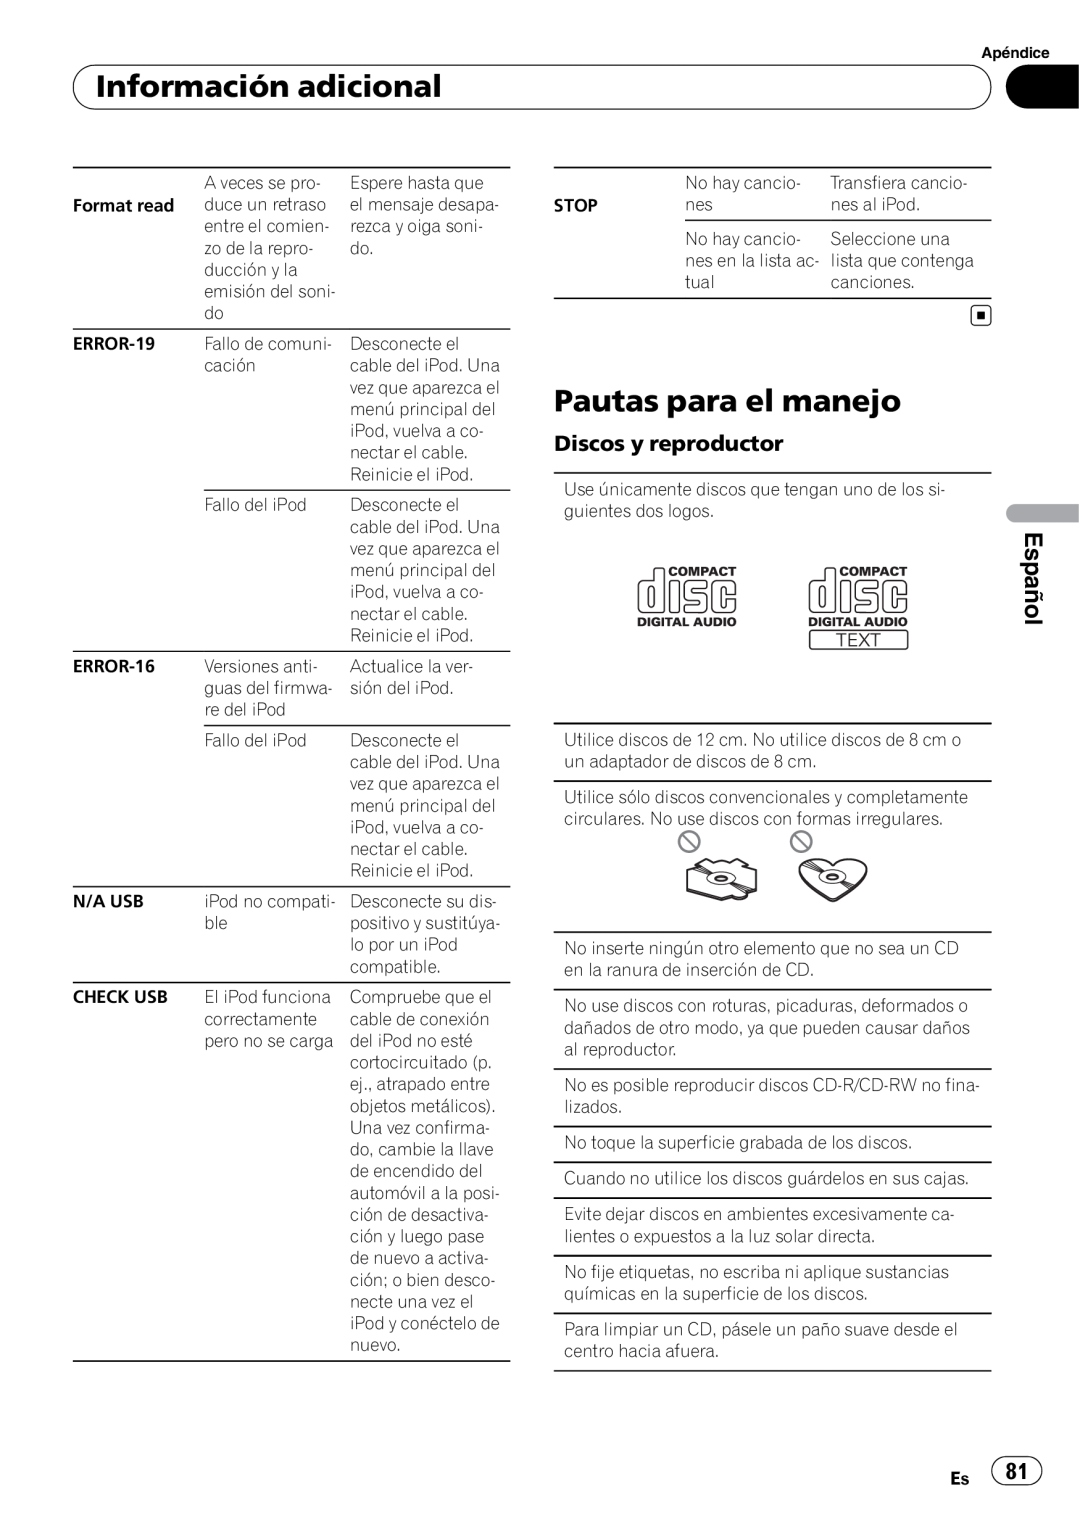 Pioneer DEH-P5200HD operation manual Pautas para el manejo, Información adicional, Español, Discos y reproductor 